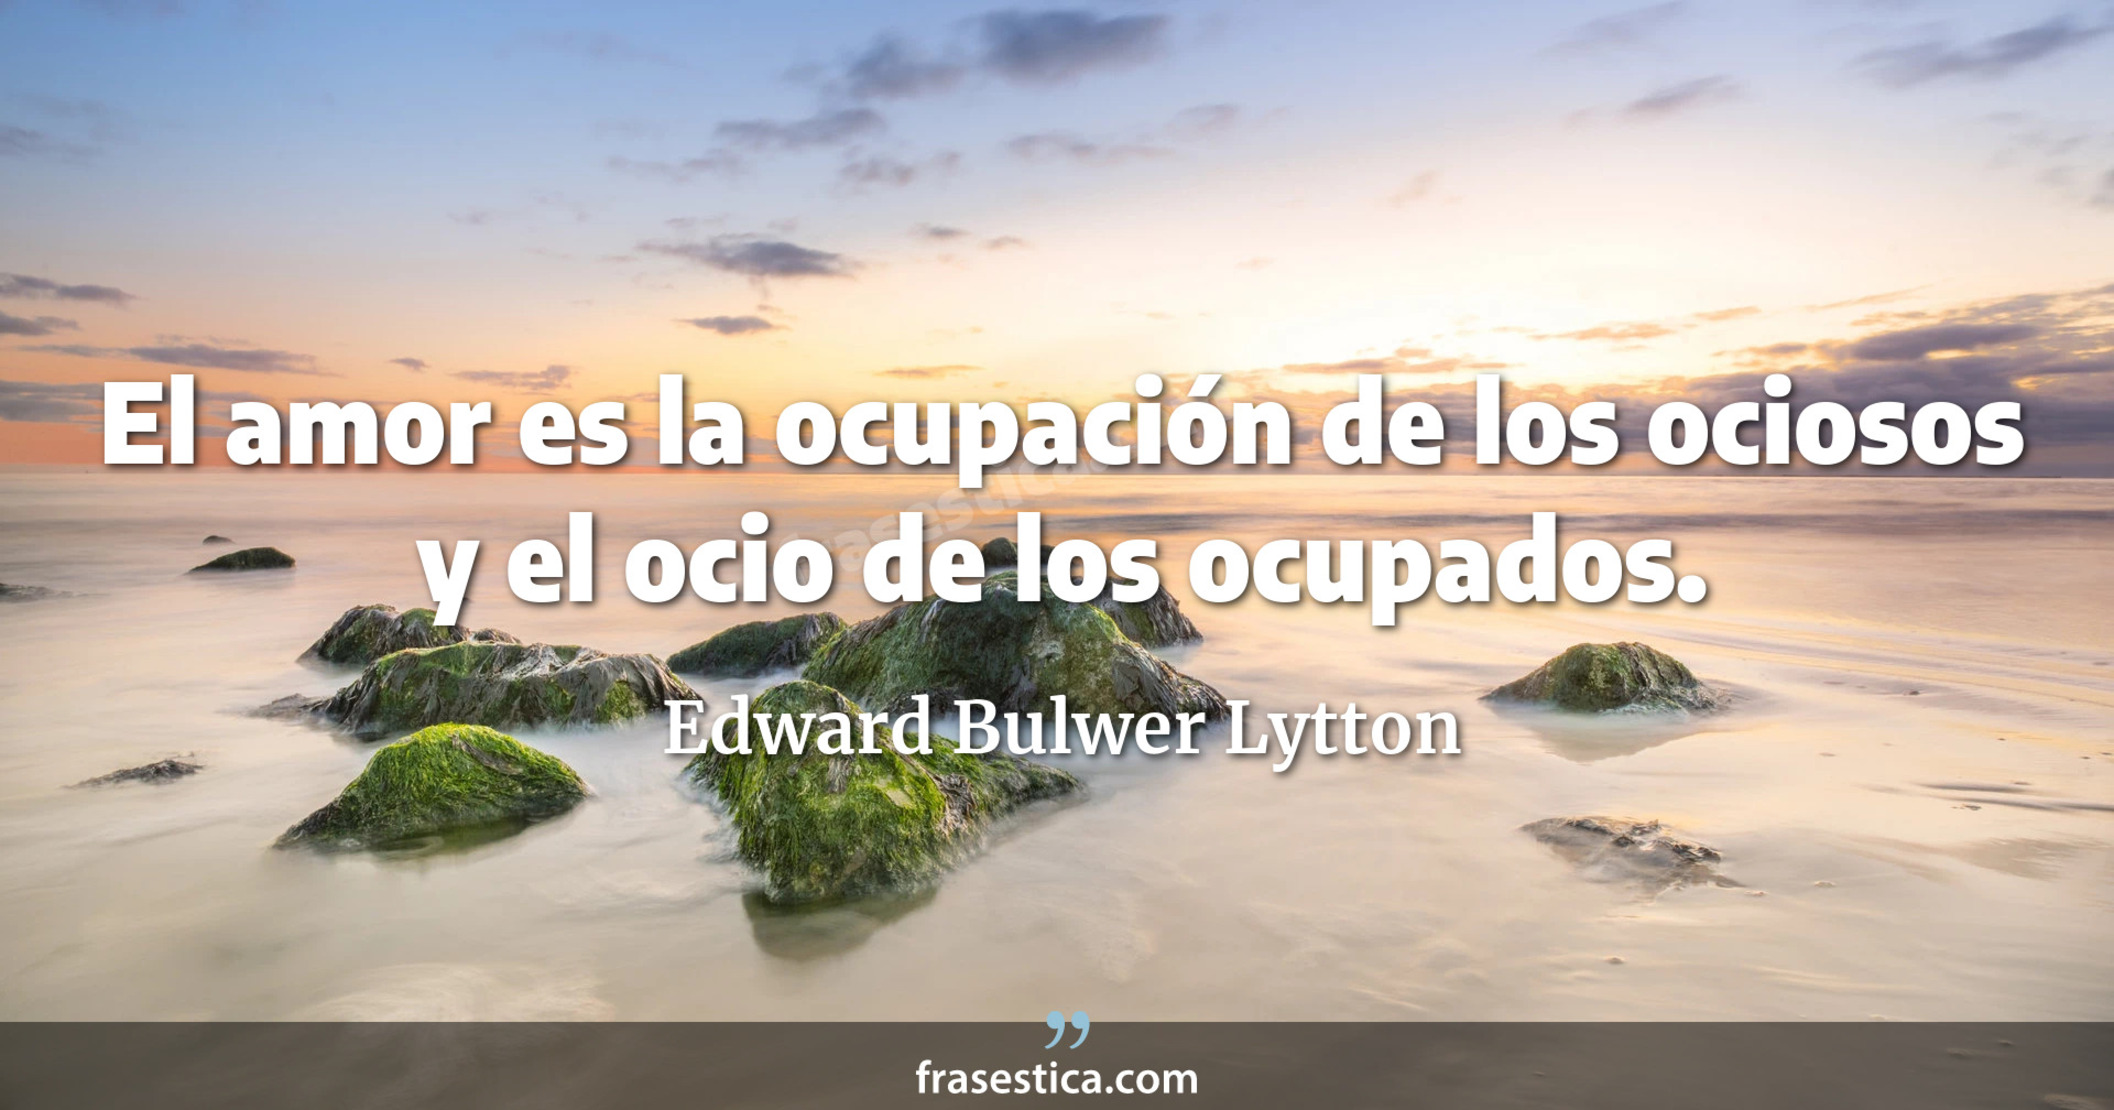 El amor es la ocupación de los ociosos y el ocio de los ocupados. - Edward Bulwer Lytton